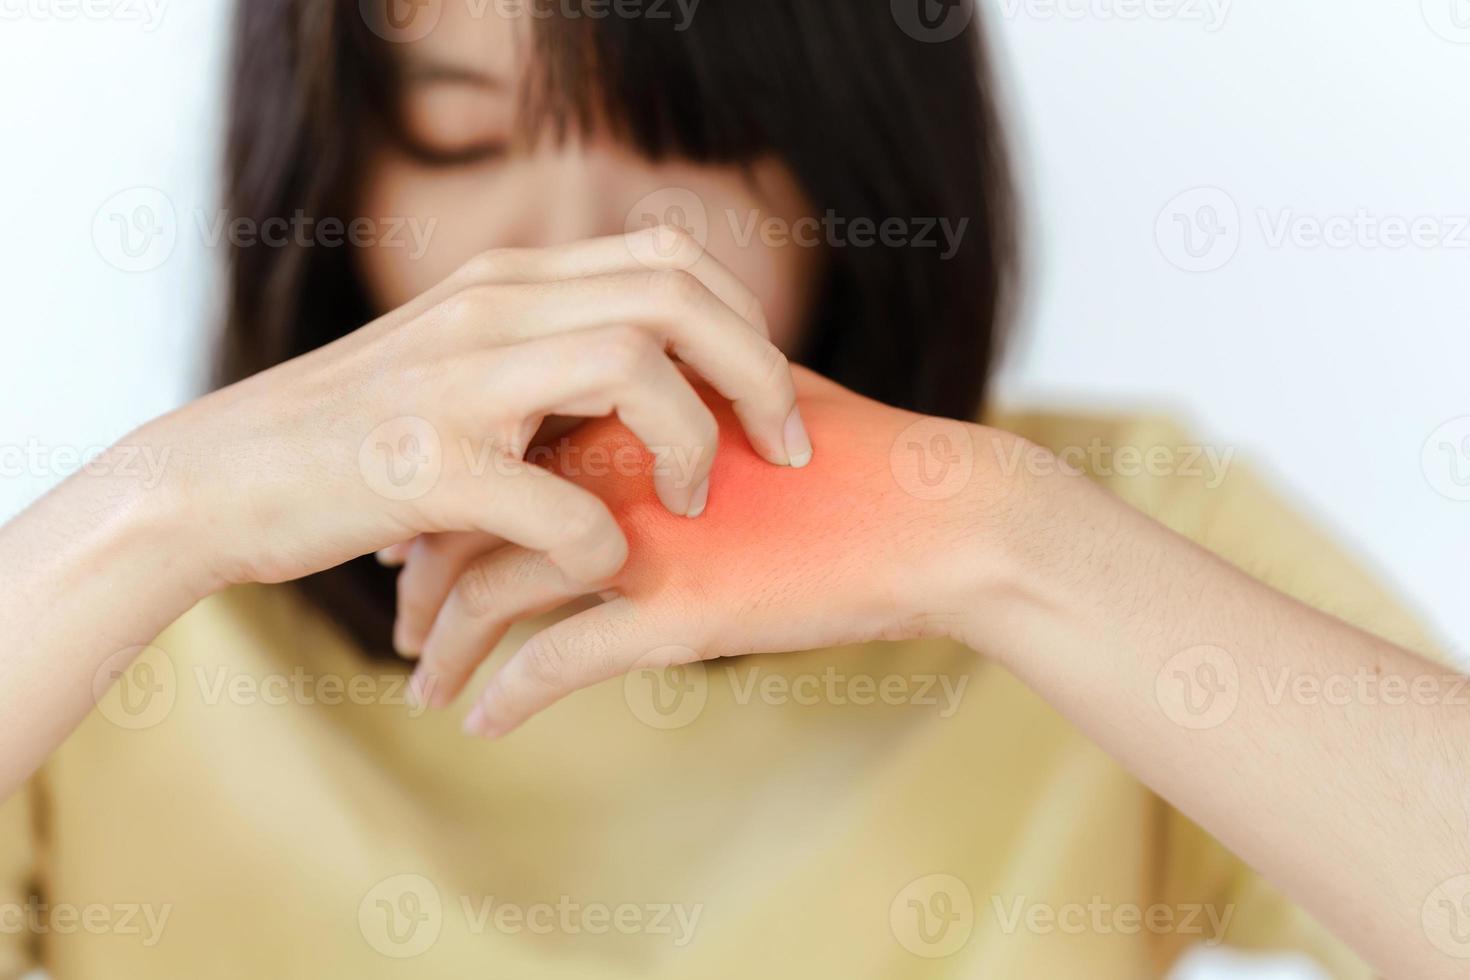 la mano de una mujer se rasca la mano debido a una reacción alérgica o una enfermedad de la piel. foto